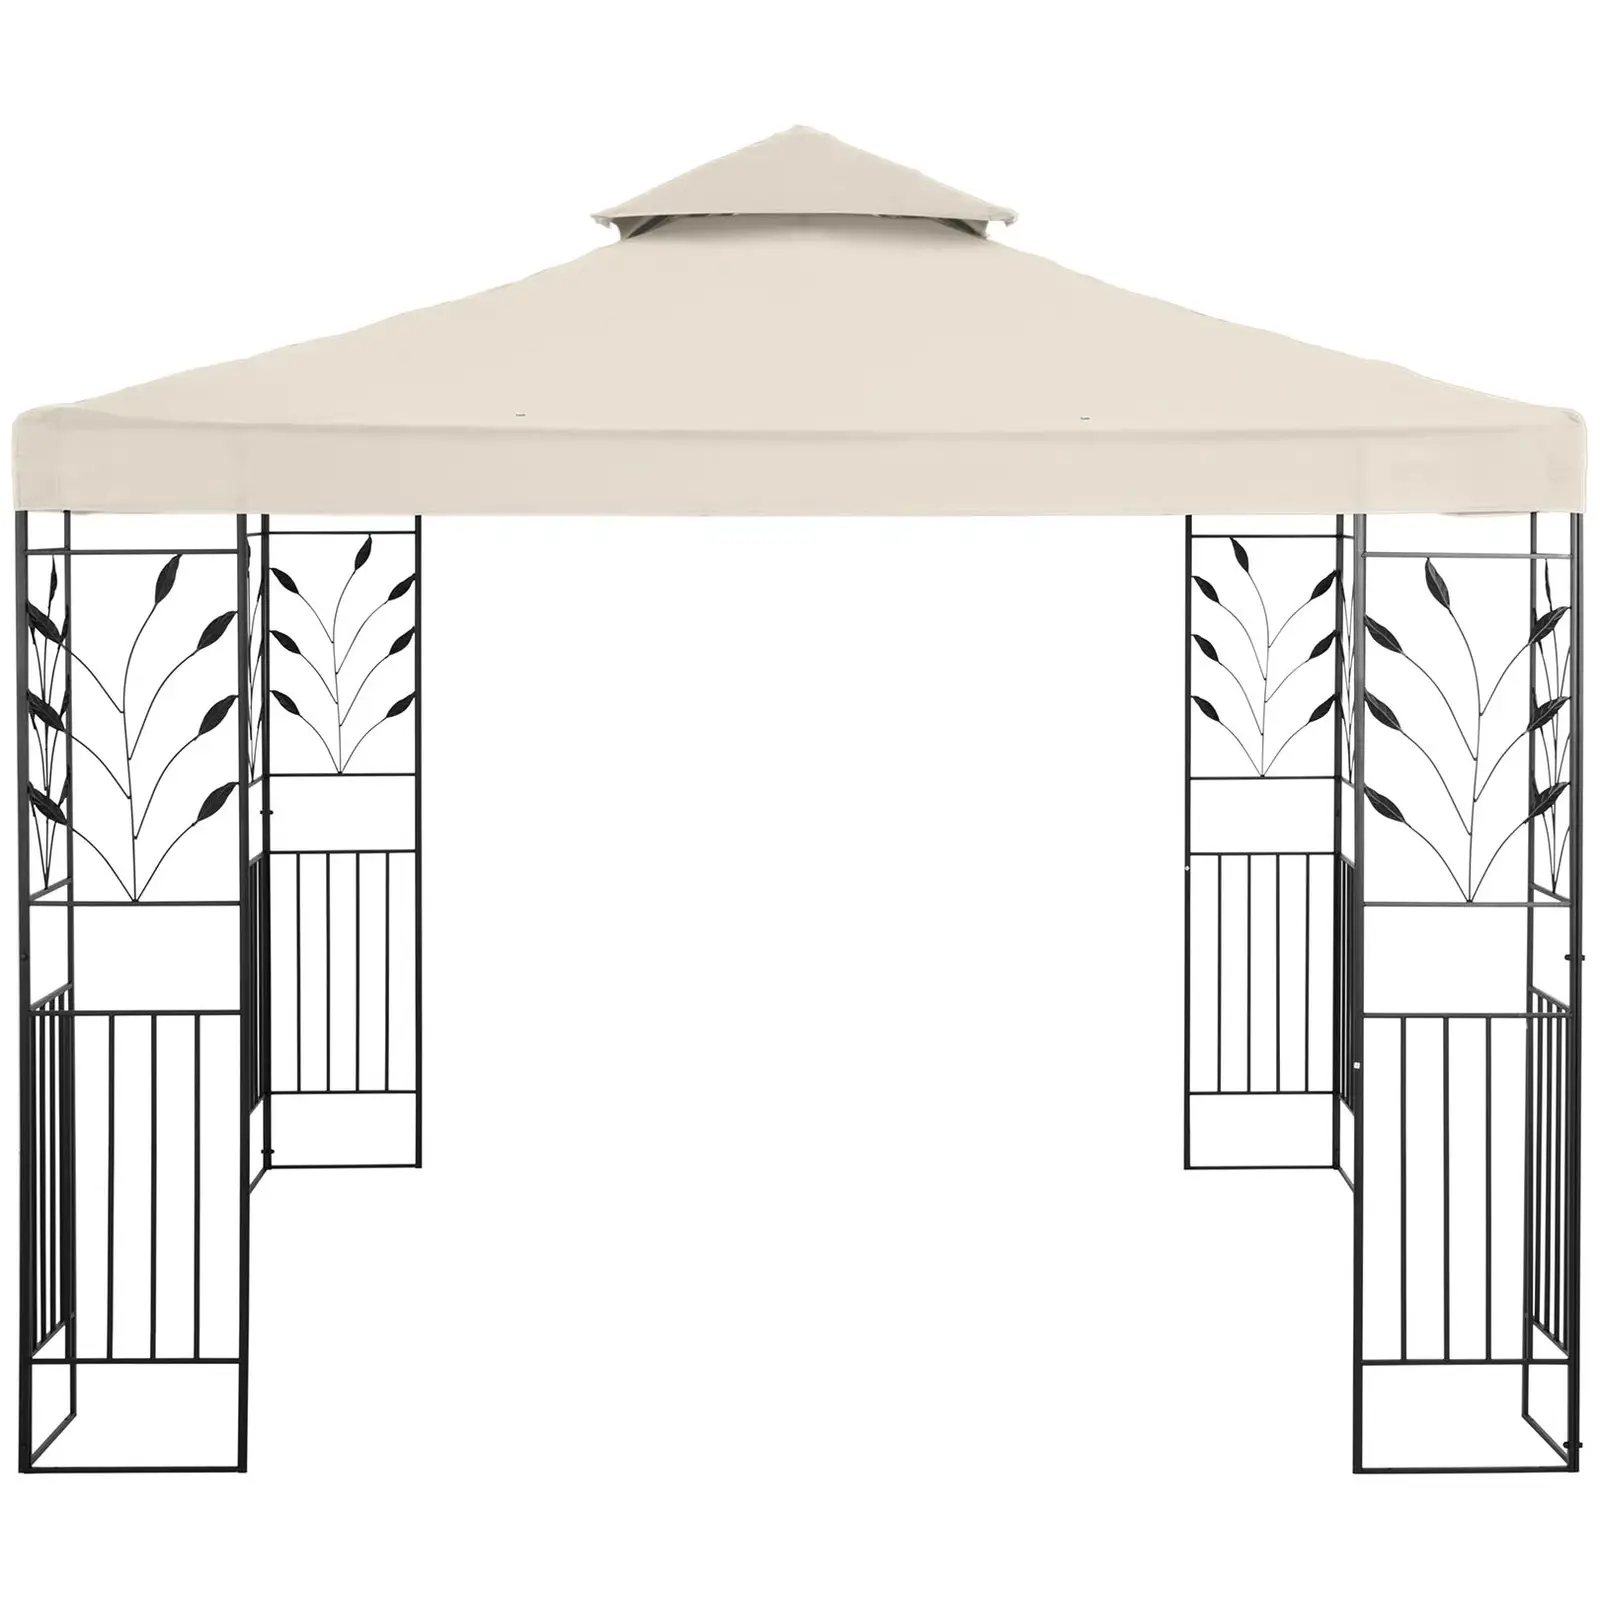 Kakkoslaatu Paviljonki - 3 x 3 m - 180 g/m² - kermanvärinen